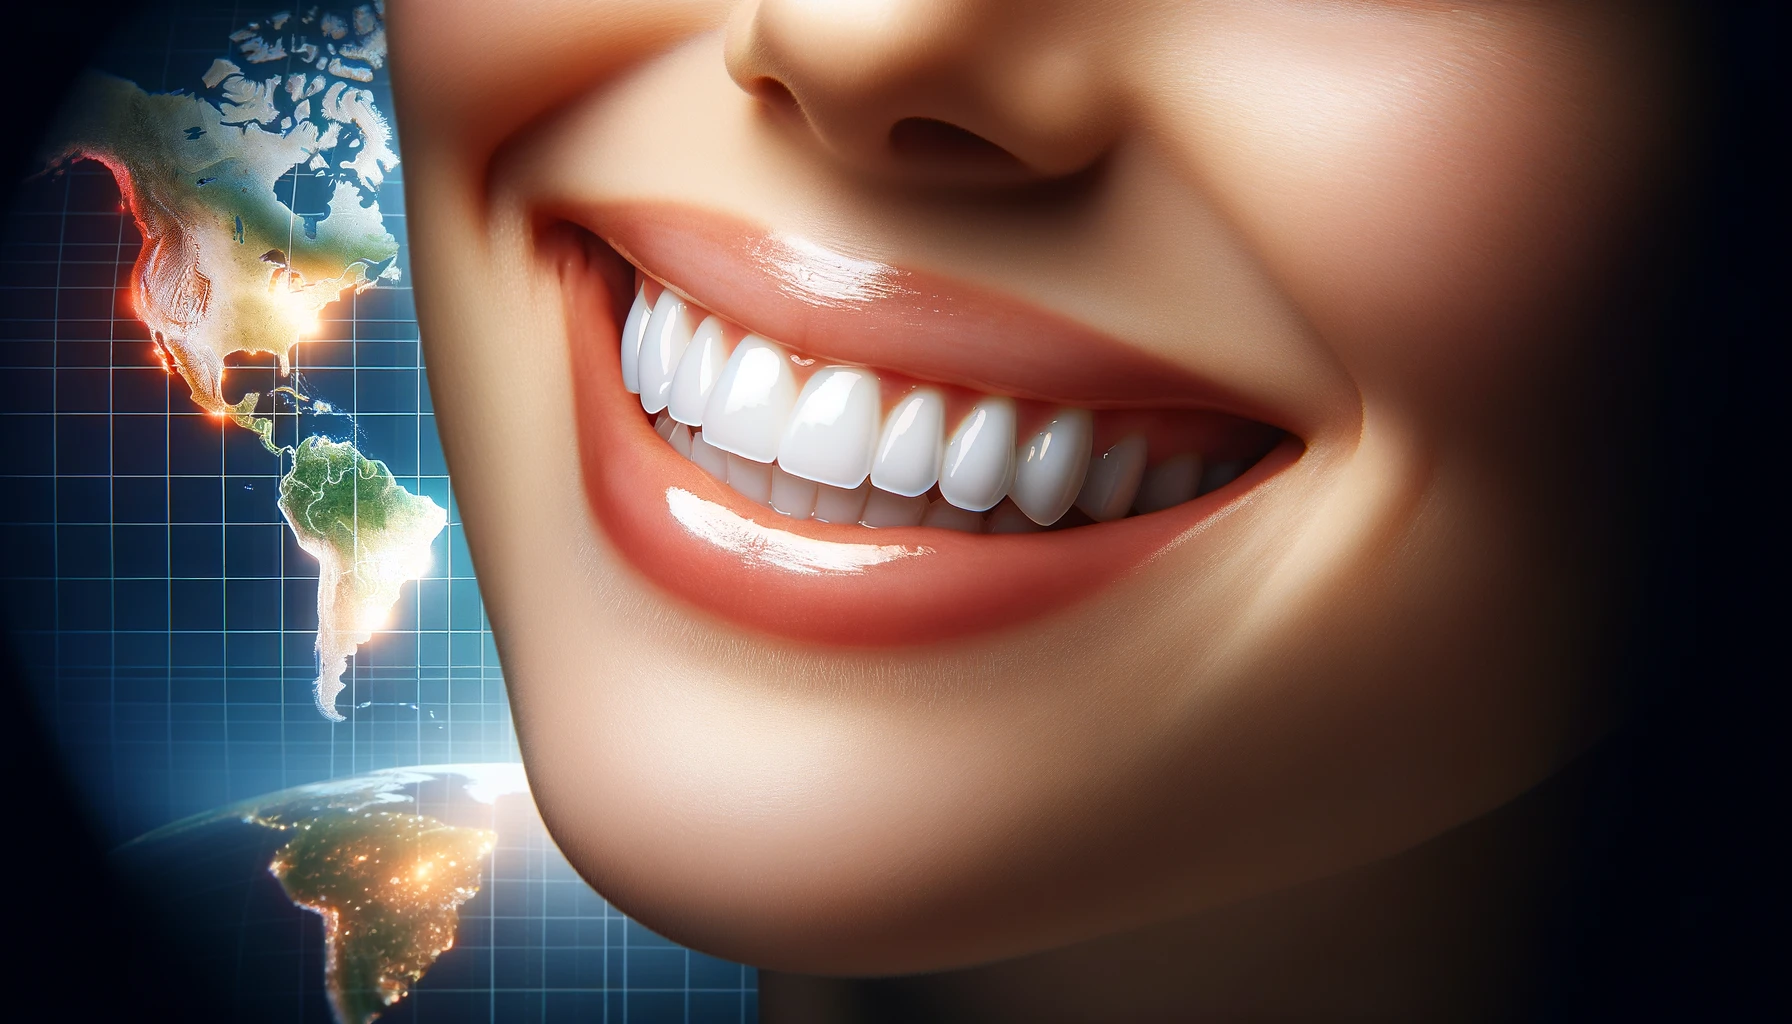 Strahlendes Lächeln weltweit: Zahnbehandlungen im Ausland